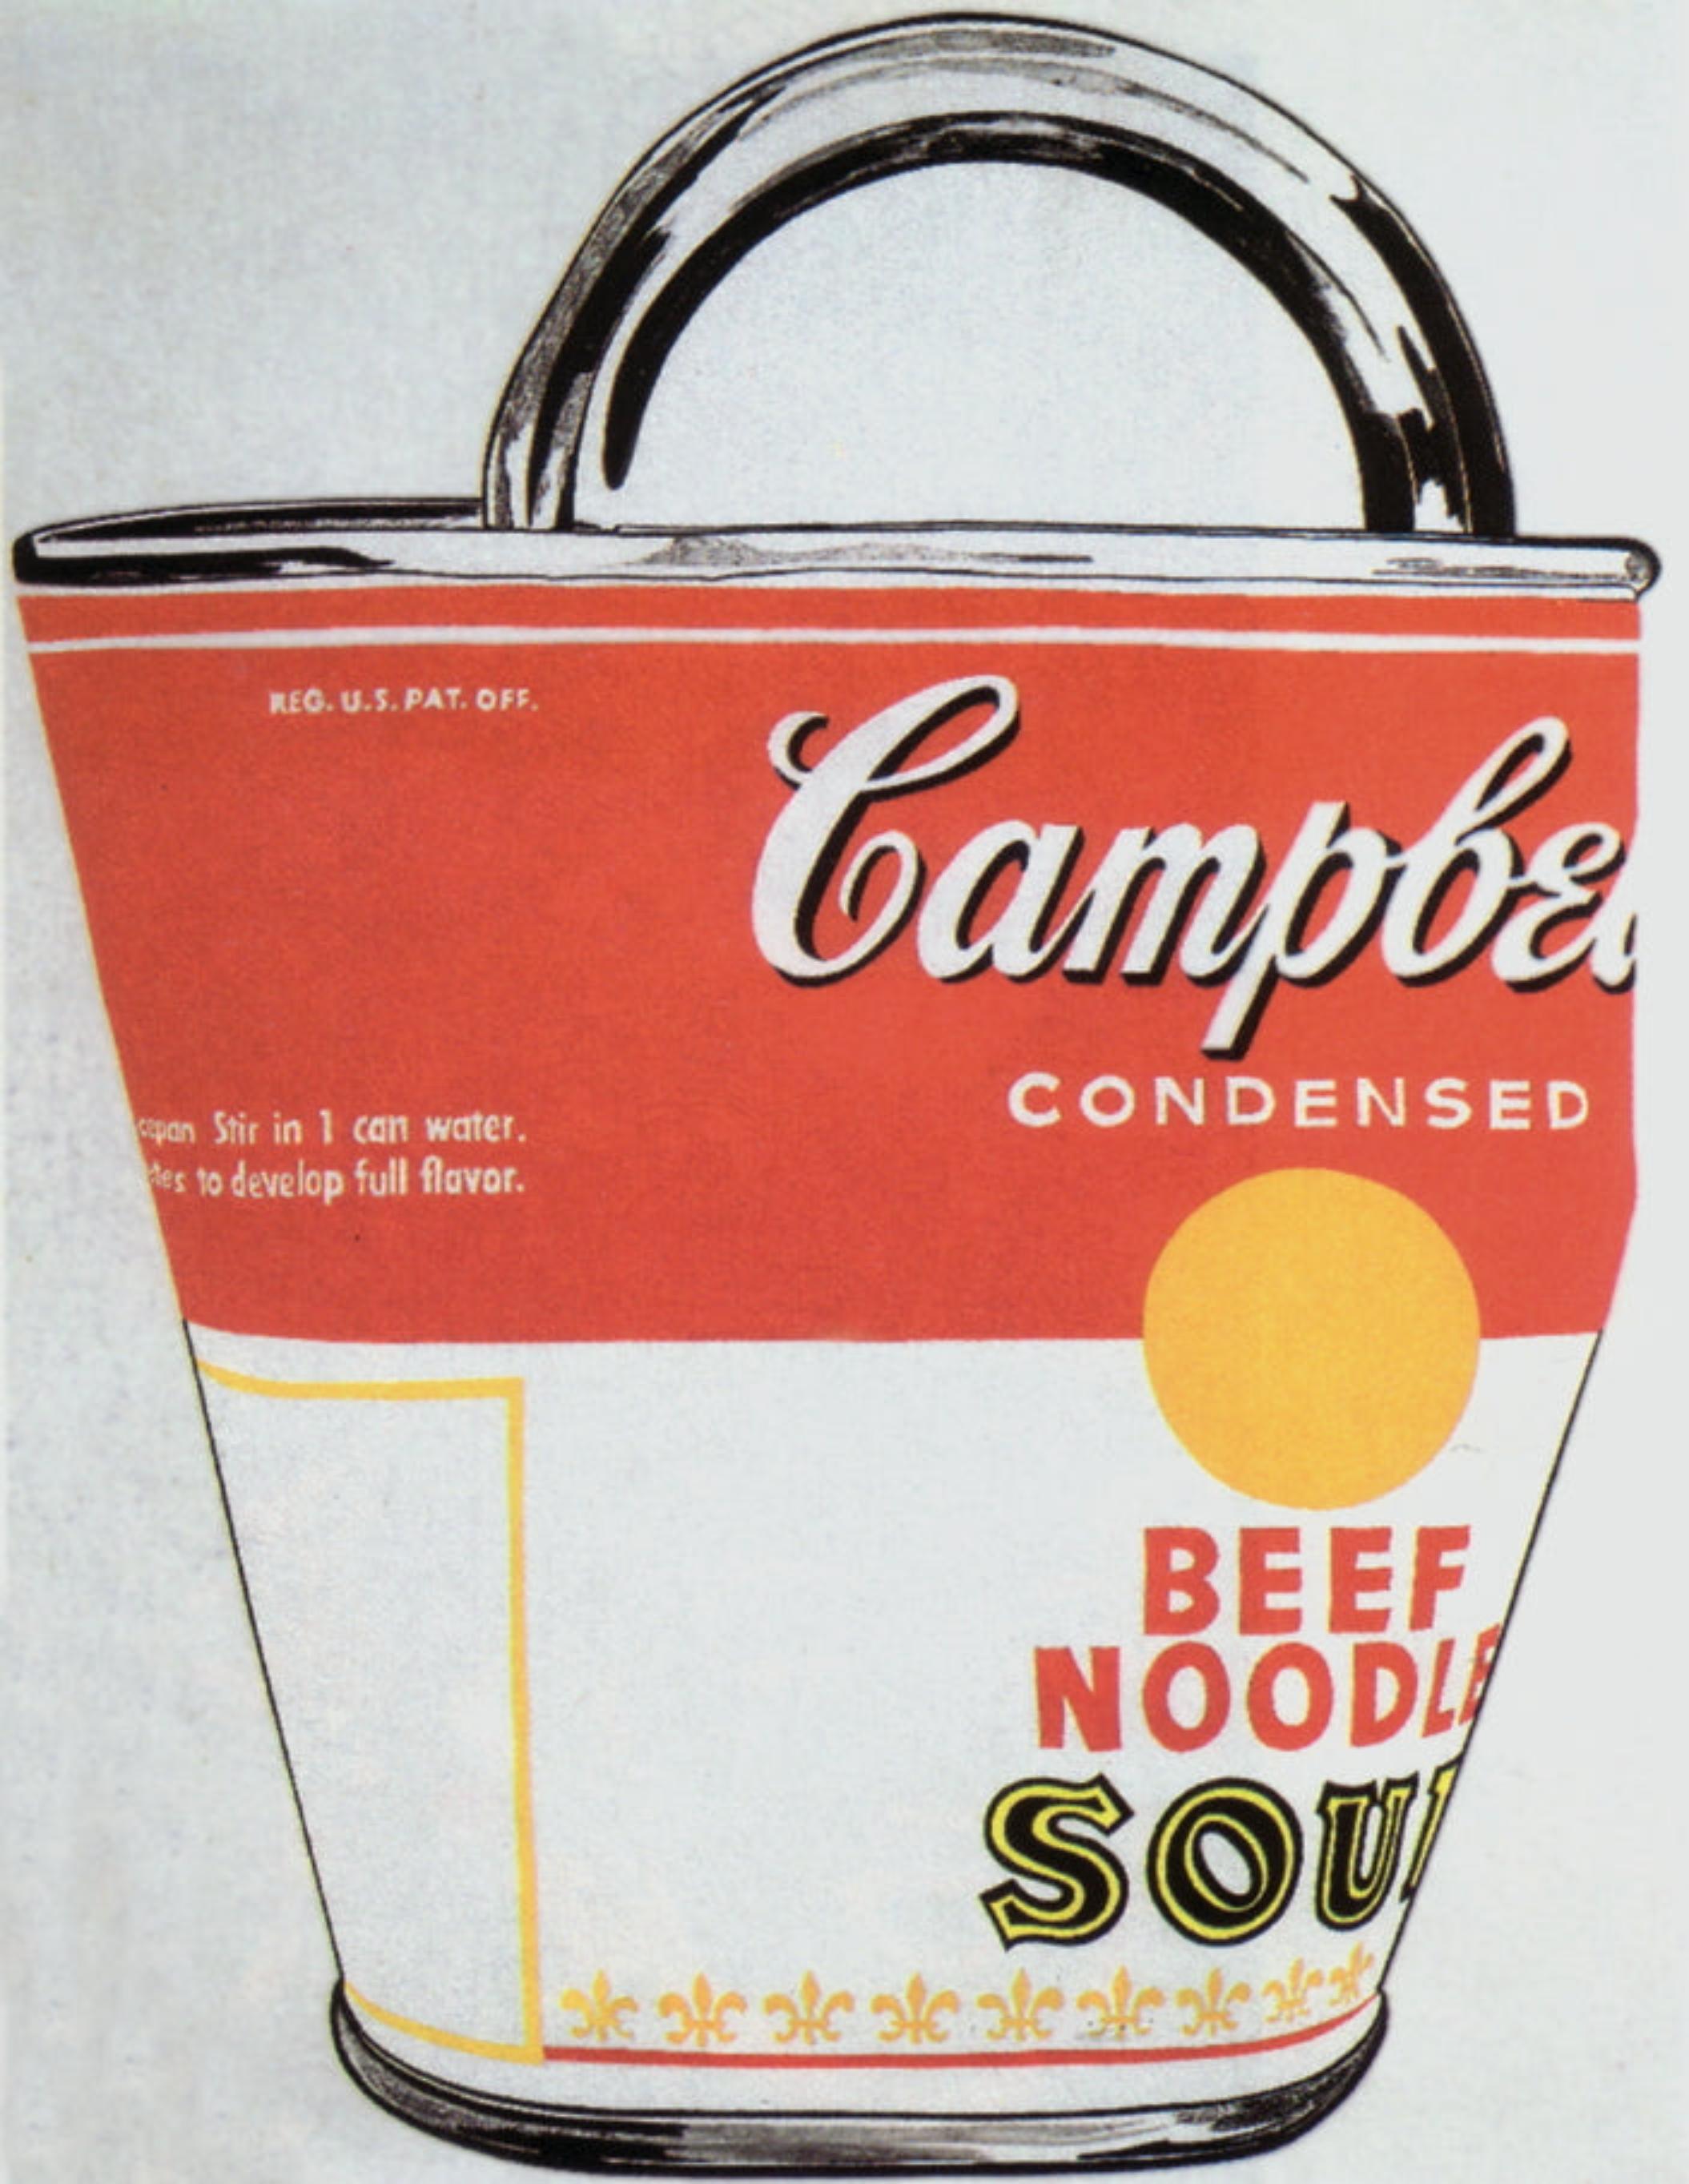 Papierformat: 30,25 x 23,5 Zoll (76,835 x 59,69 cm)
Bildgröße: 30,25 x 23,5 Zoll (76,835 x 59,69 cm)
Gerahmt: Nein
Zustand: A: Neuwertig

Zusätzliche Details: Soup Can bag von Andy Warhol, gedruckt im Jahr 2000, veröffentlicht von Te neues